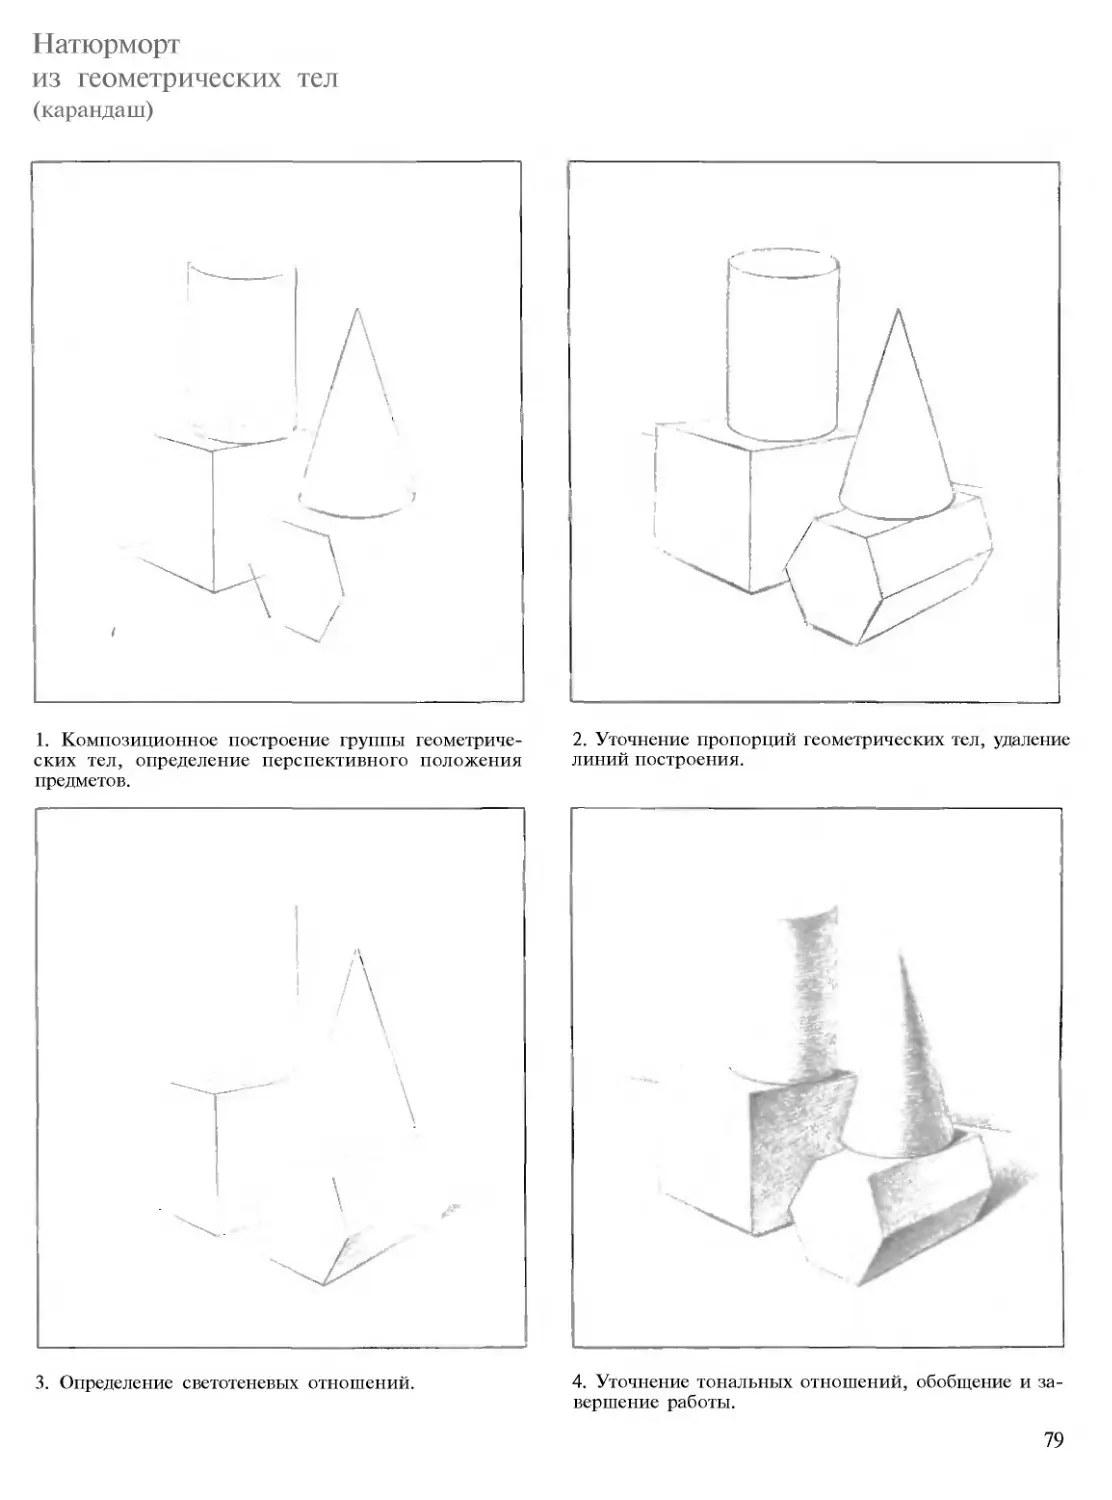 Этапы рисования геометрических тел